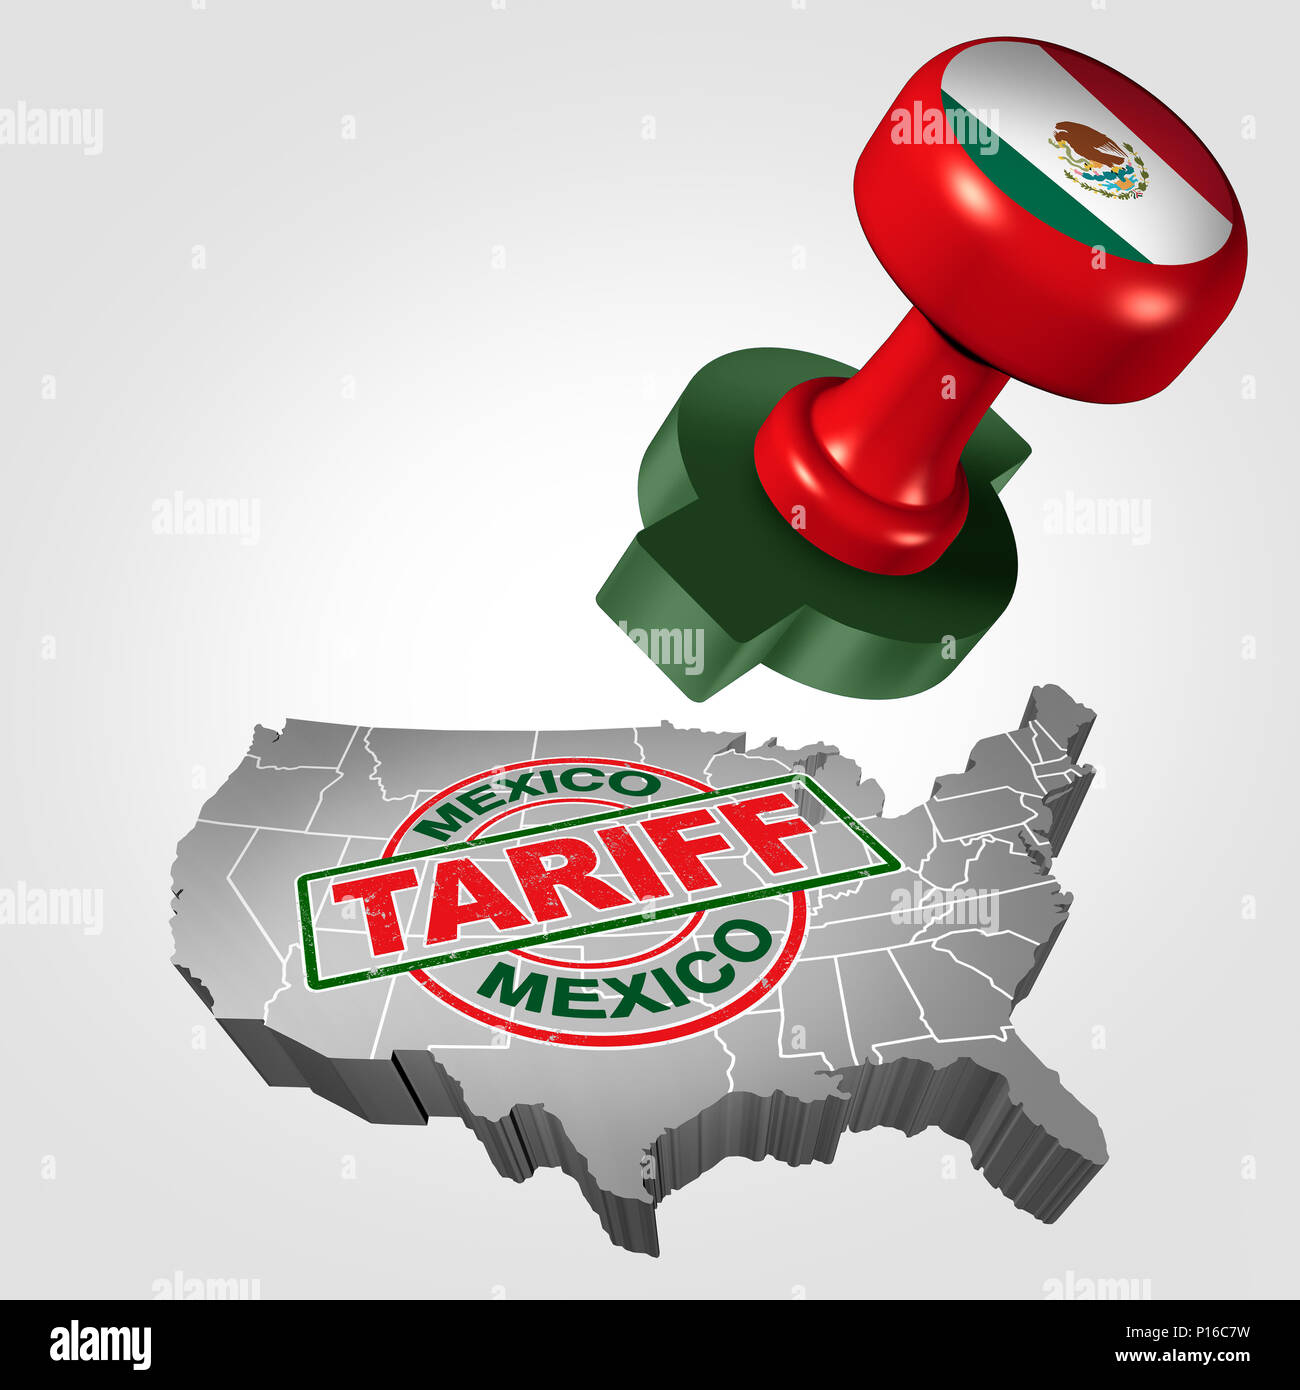 Messico tariffa su Stati Uniti come acciaio e alluminio le tariffe come un timbro sul testo come un economico fiscale del commercio NAFTA disputa sulle importazioni e le esportazioni. Foto Stock